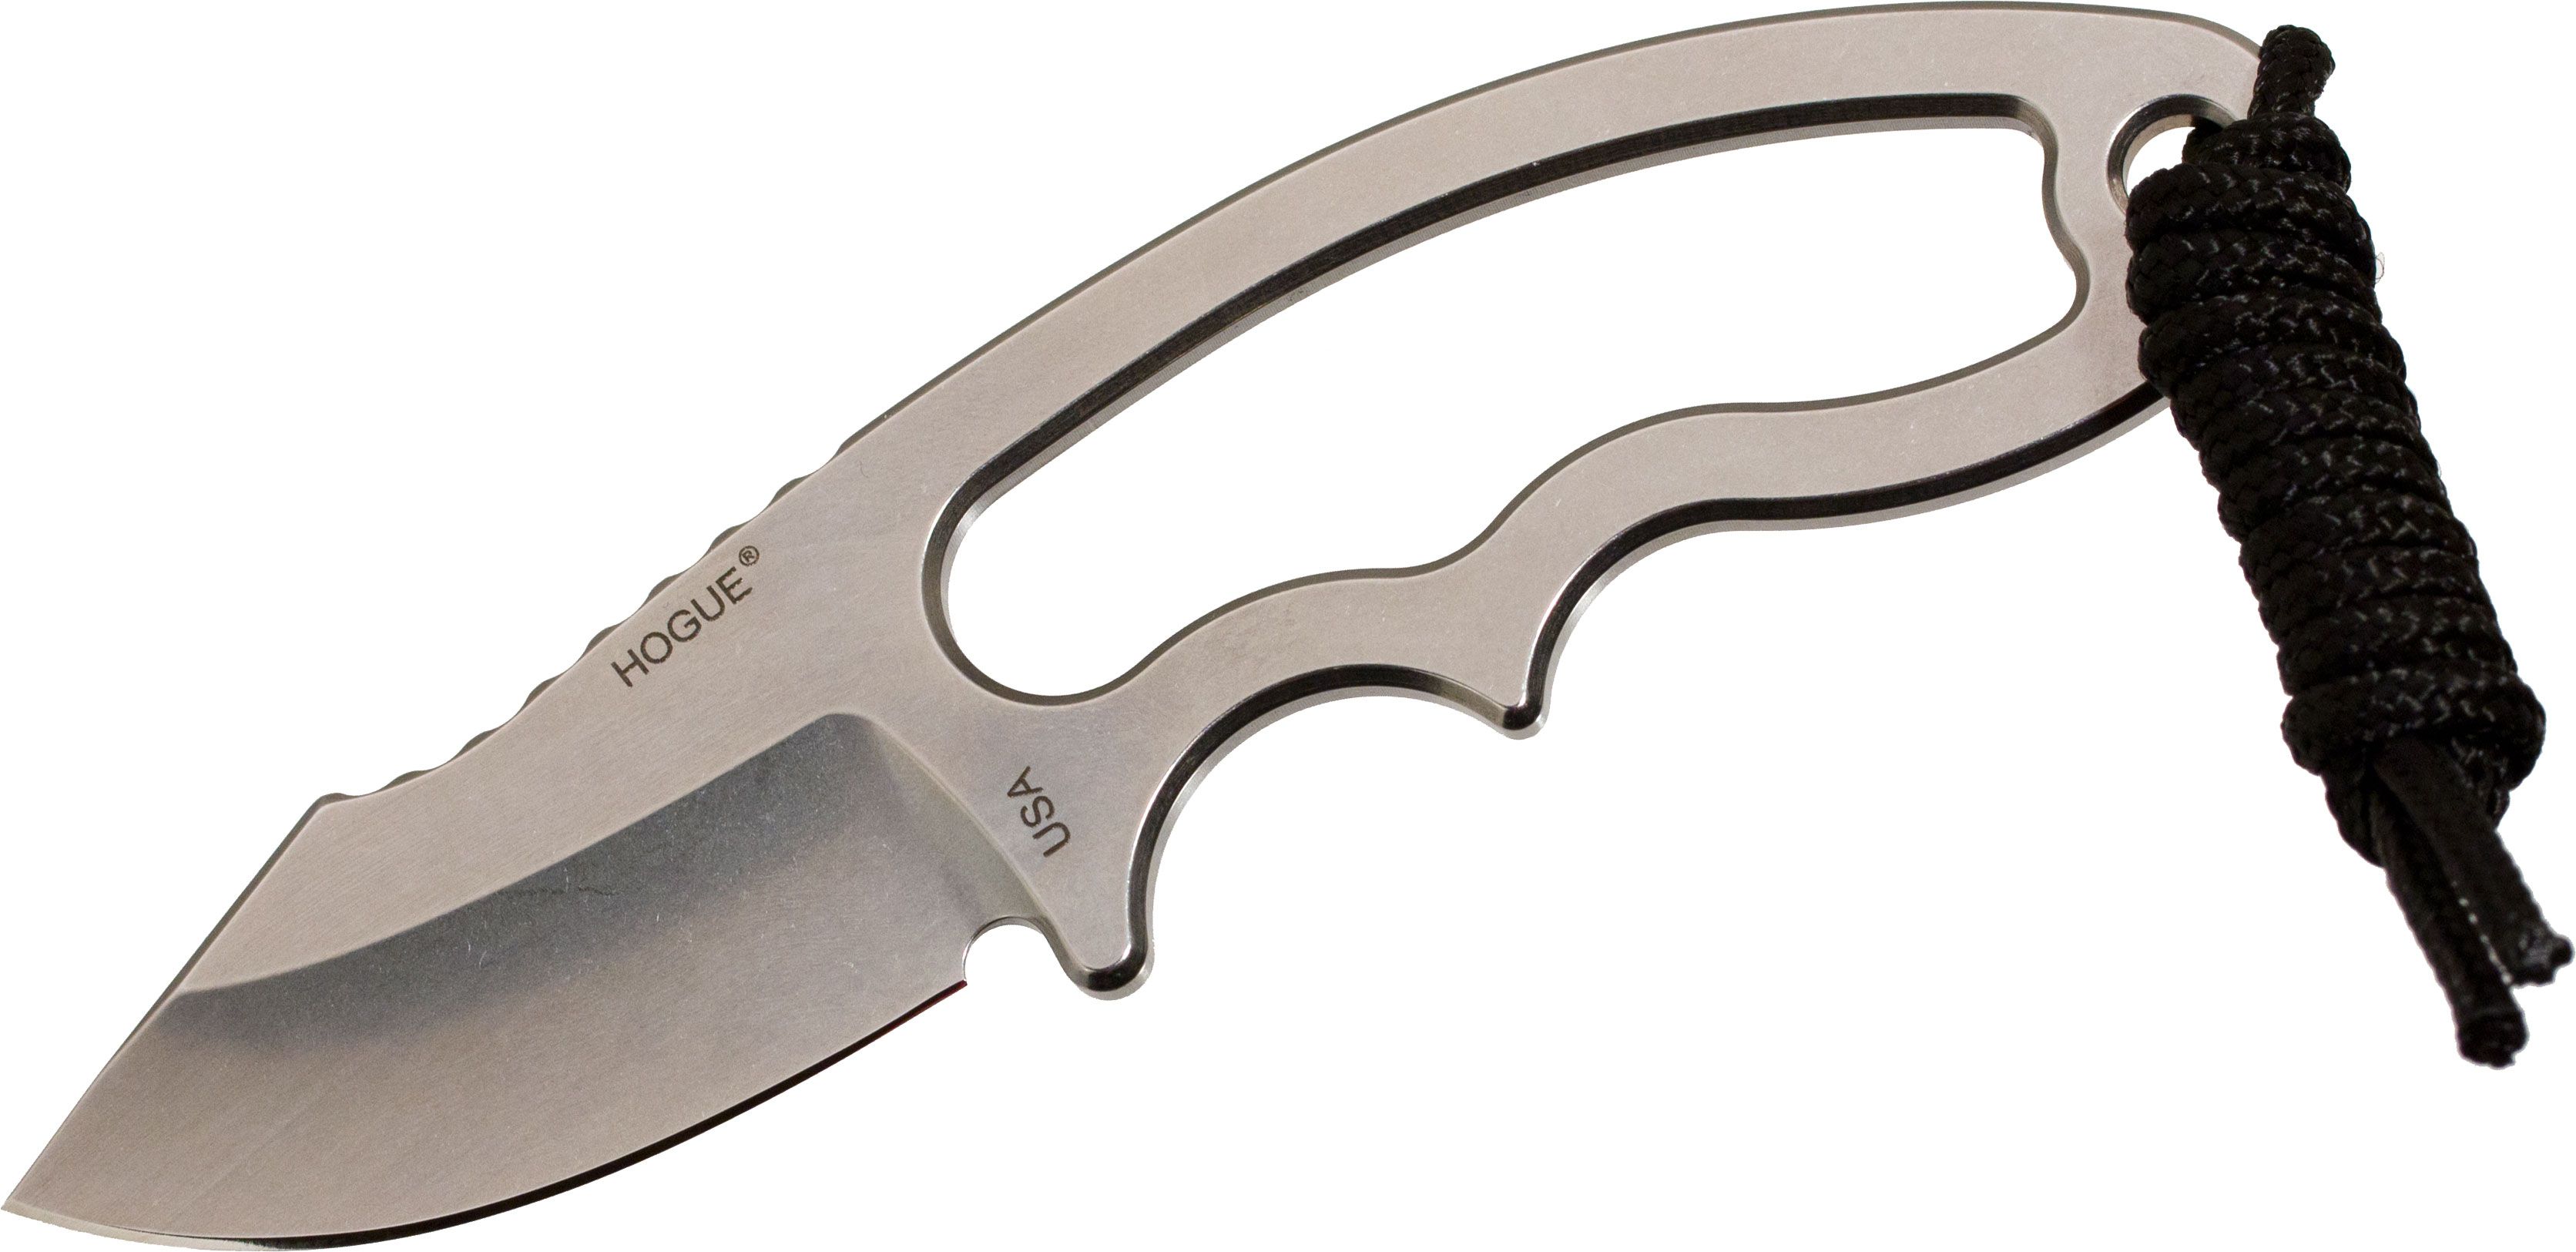 EX-F03 Clip Point Neck Knife, 154CM Steel Blade, Aerospace Polymer Sheath